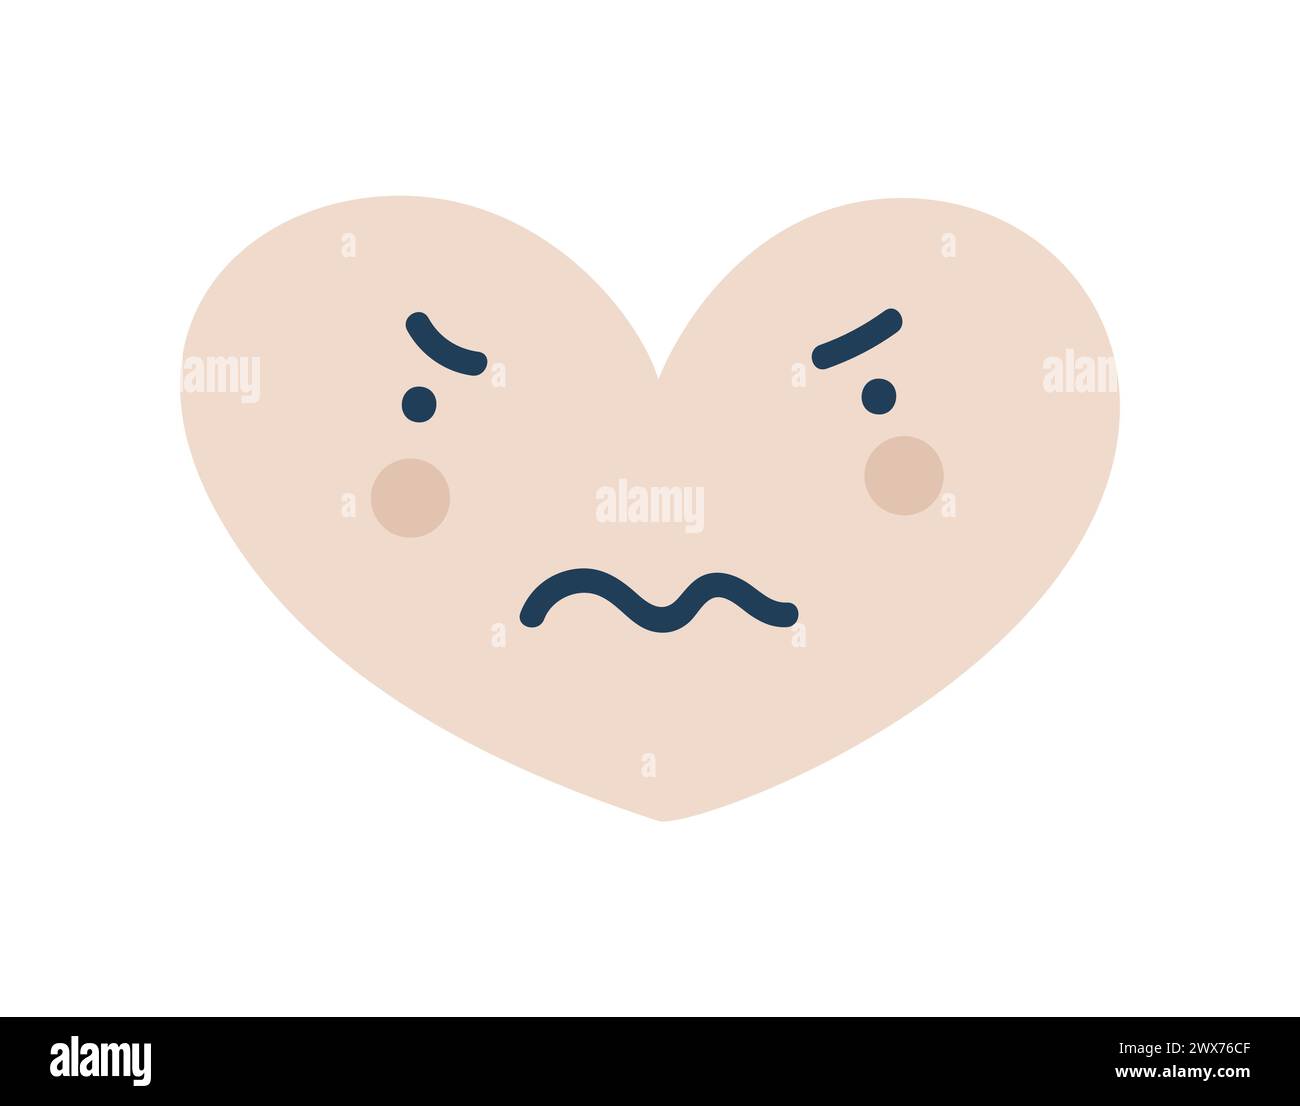 Icône Emoji cœur nerveux beige. Illustration vectorielle plate de symbole d'objet Élément de dessin animé pour la conception Web, affiche, carte de voeux Illustration de Vecteur